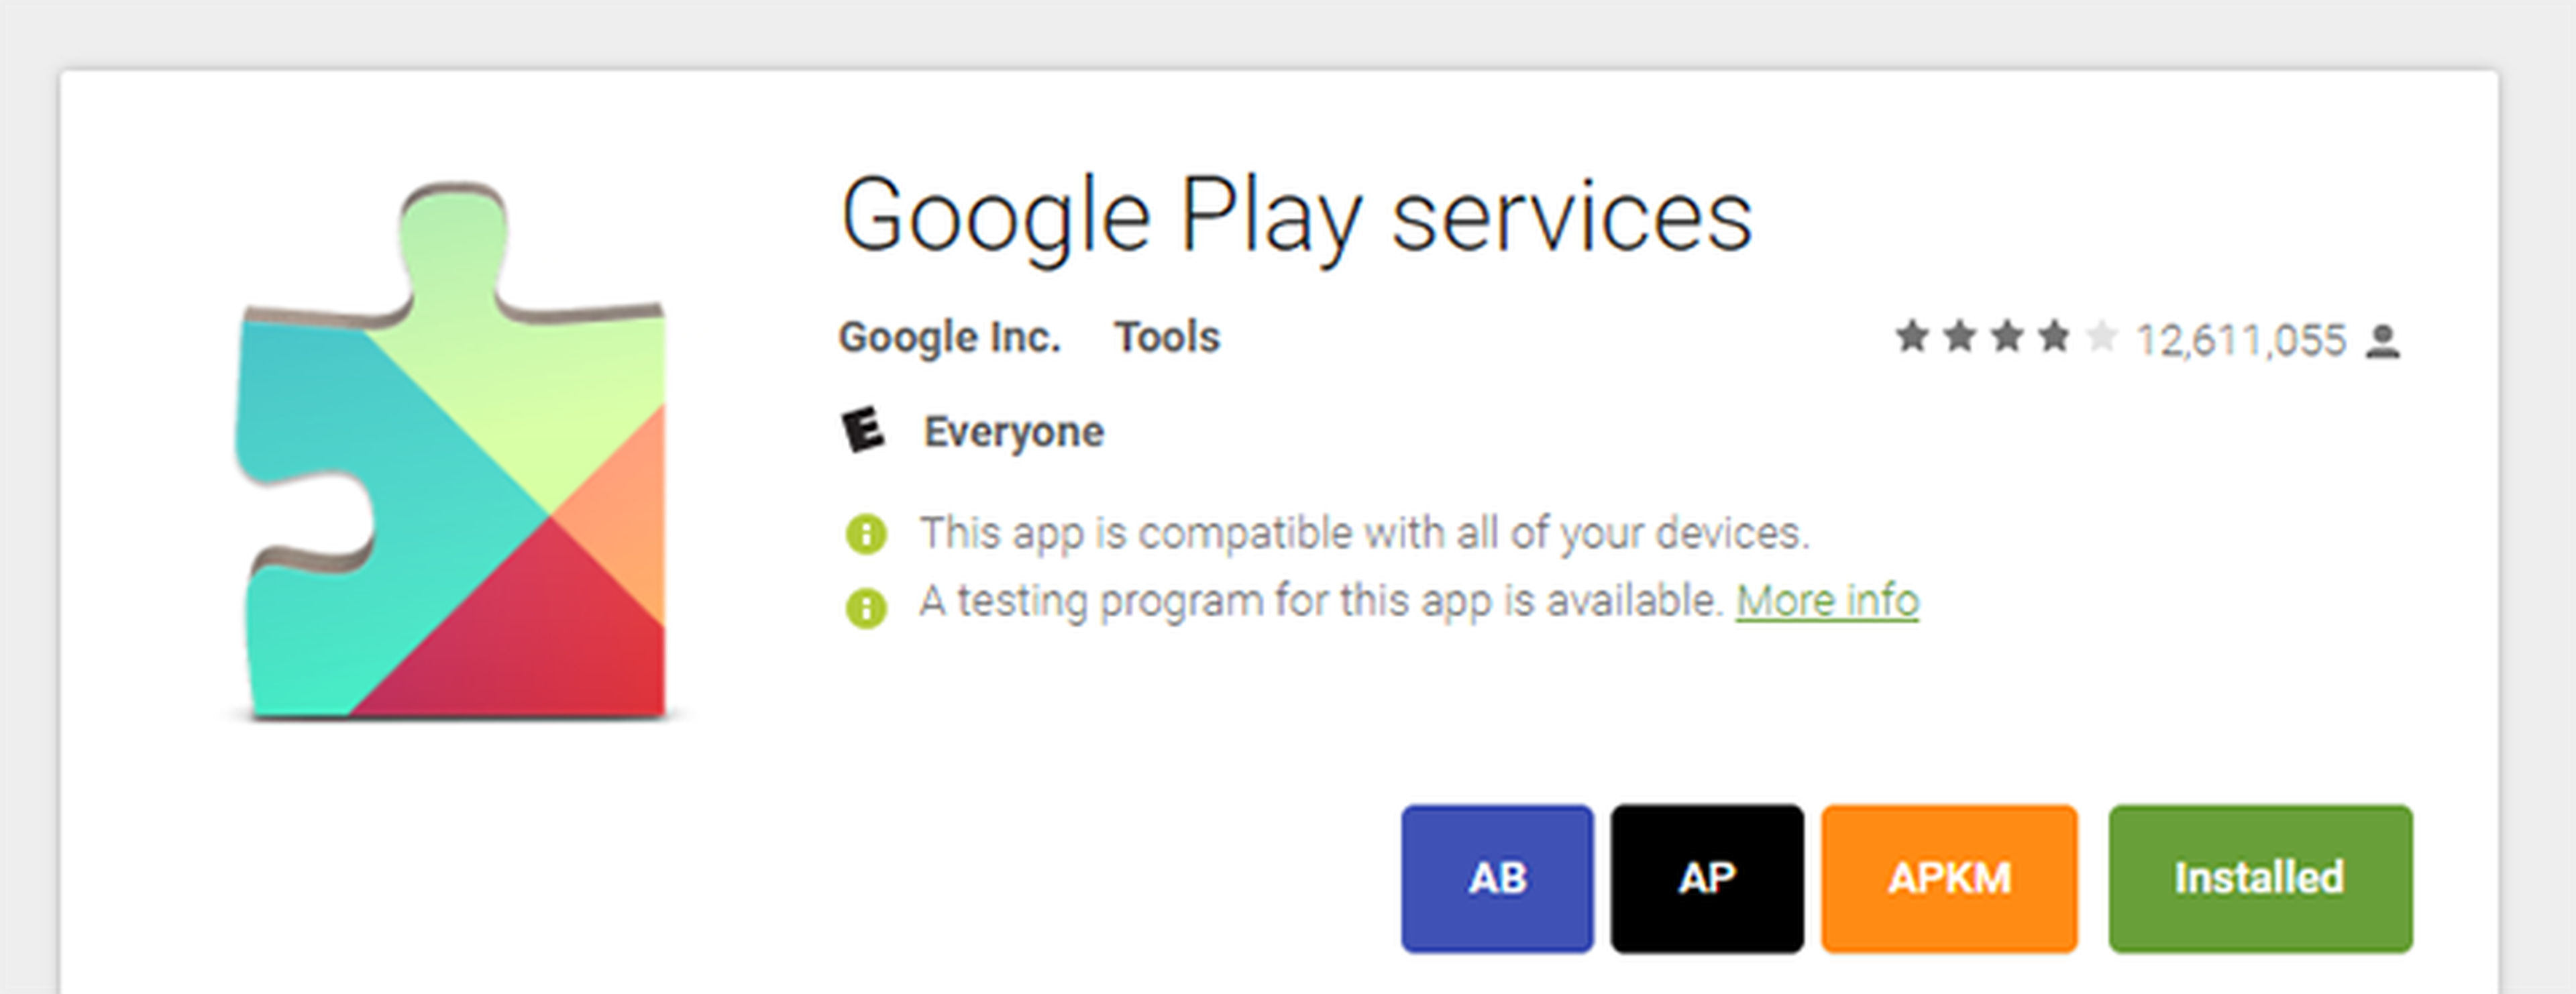 Google Play Services alcanza ya 5.000 millones de descargas